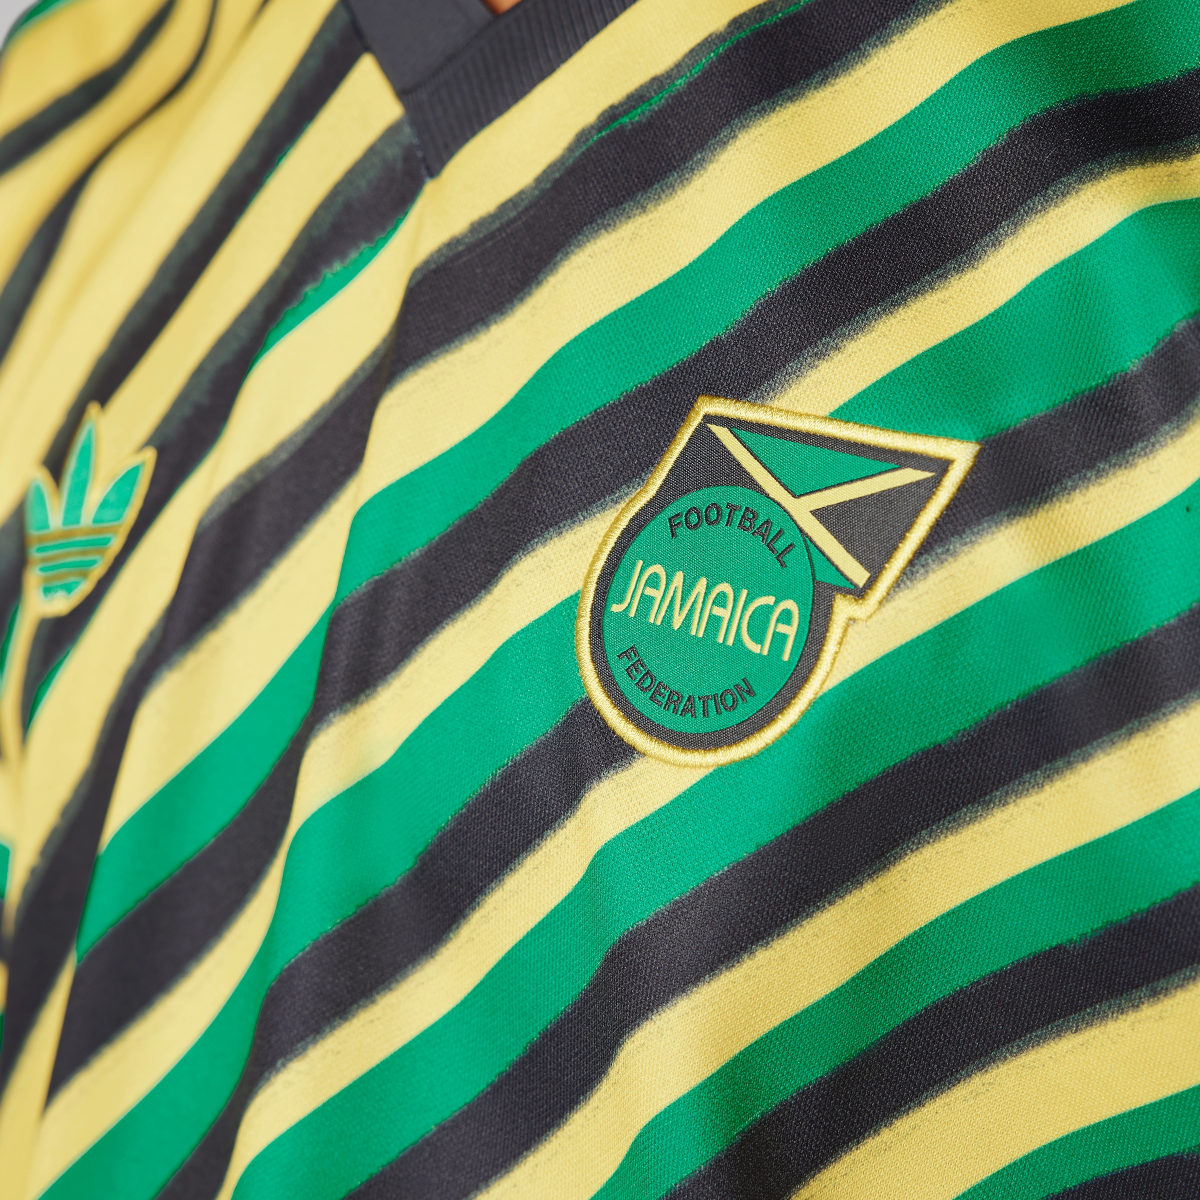 Adidas Camiseta Trefoil Jamaica. 5